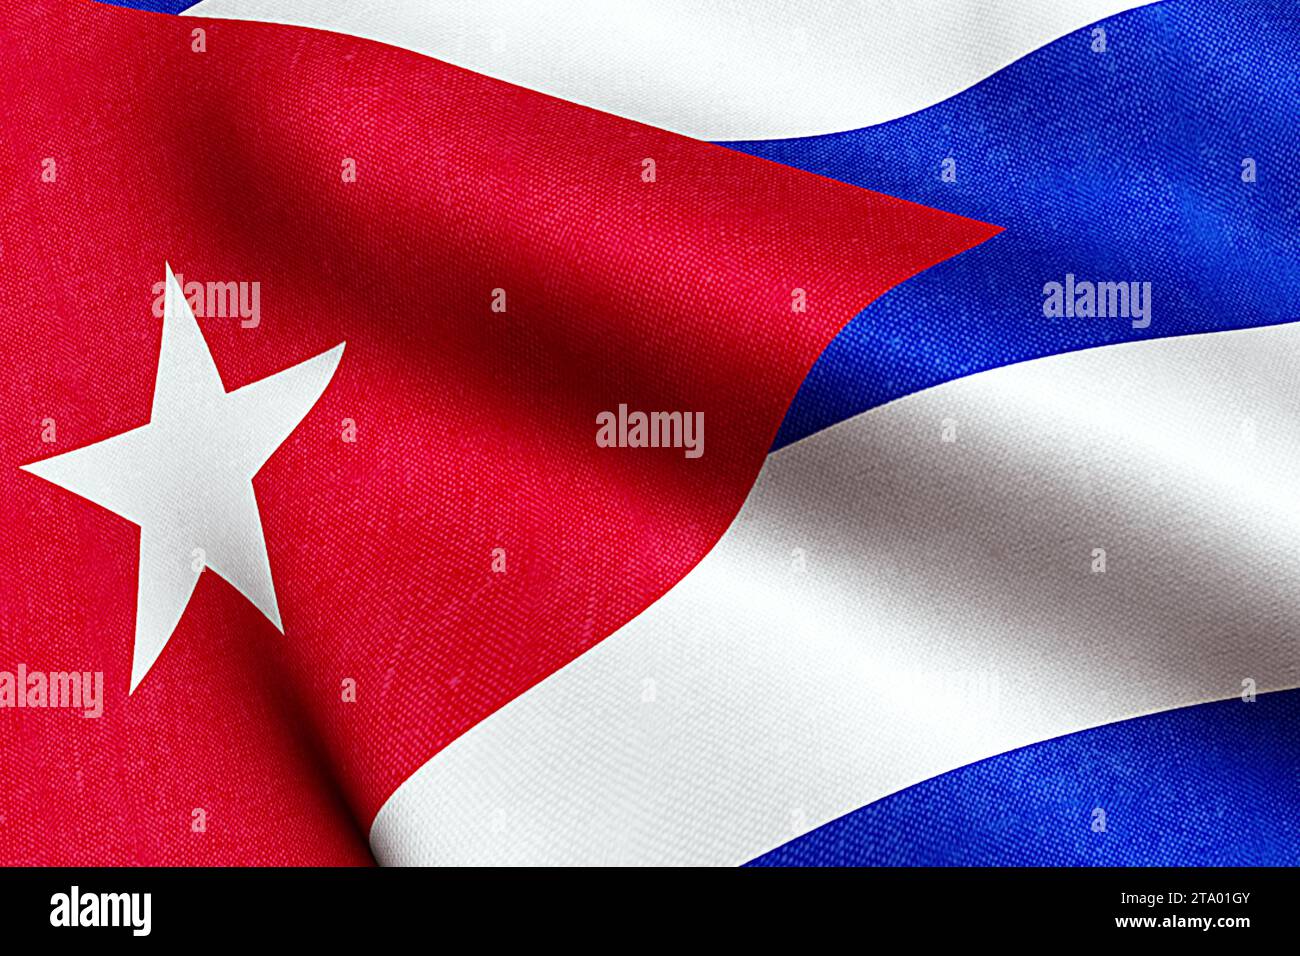 ondulation texture de tissu du drapeau de cuba, couleur de texture réelle rouge bleu et blanc du drapeau cubain, concept de dictature communiste Banque D'Images